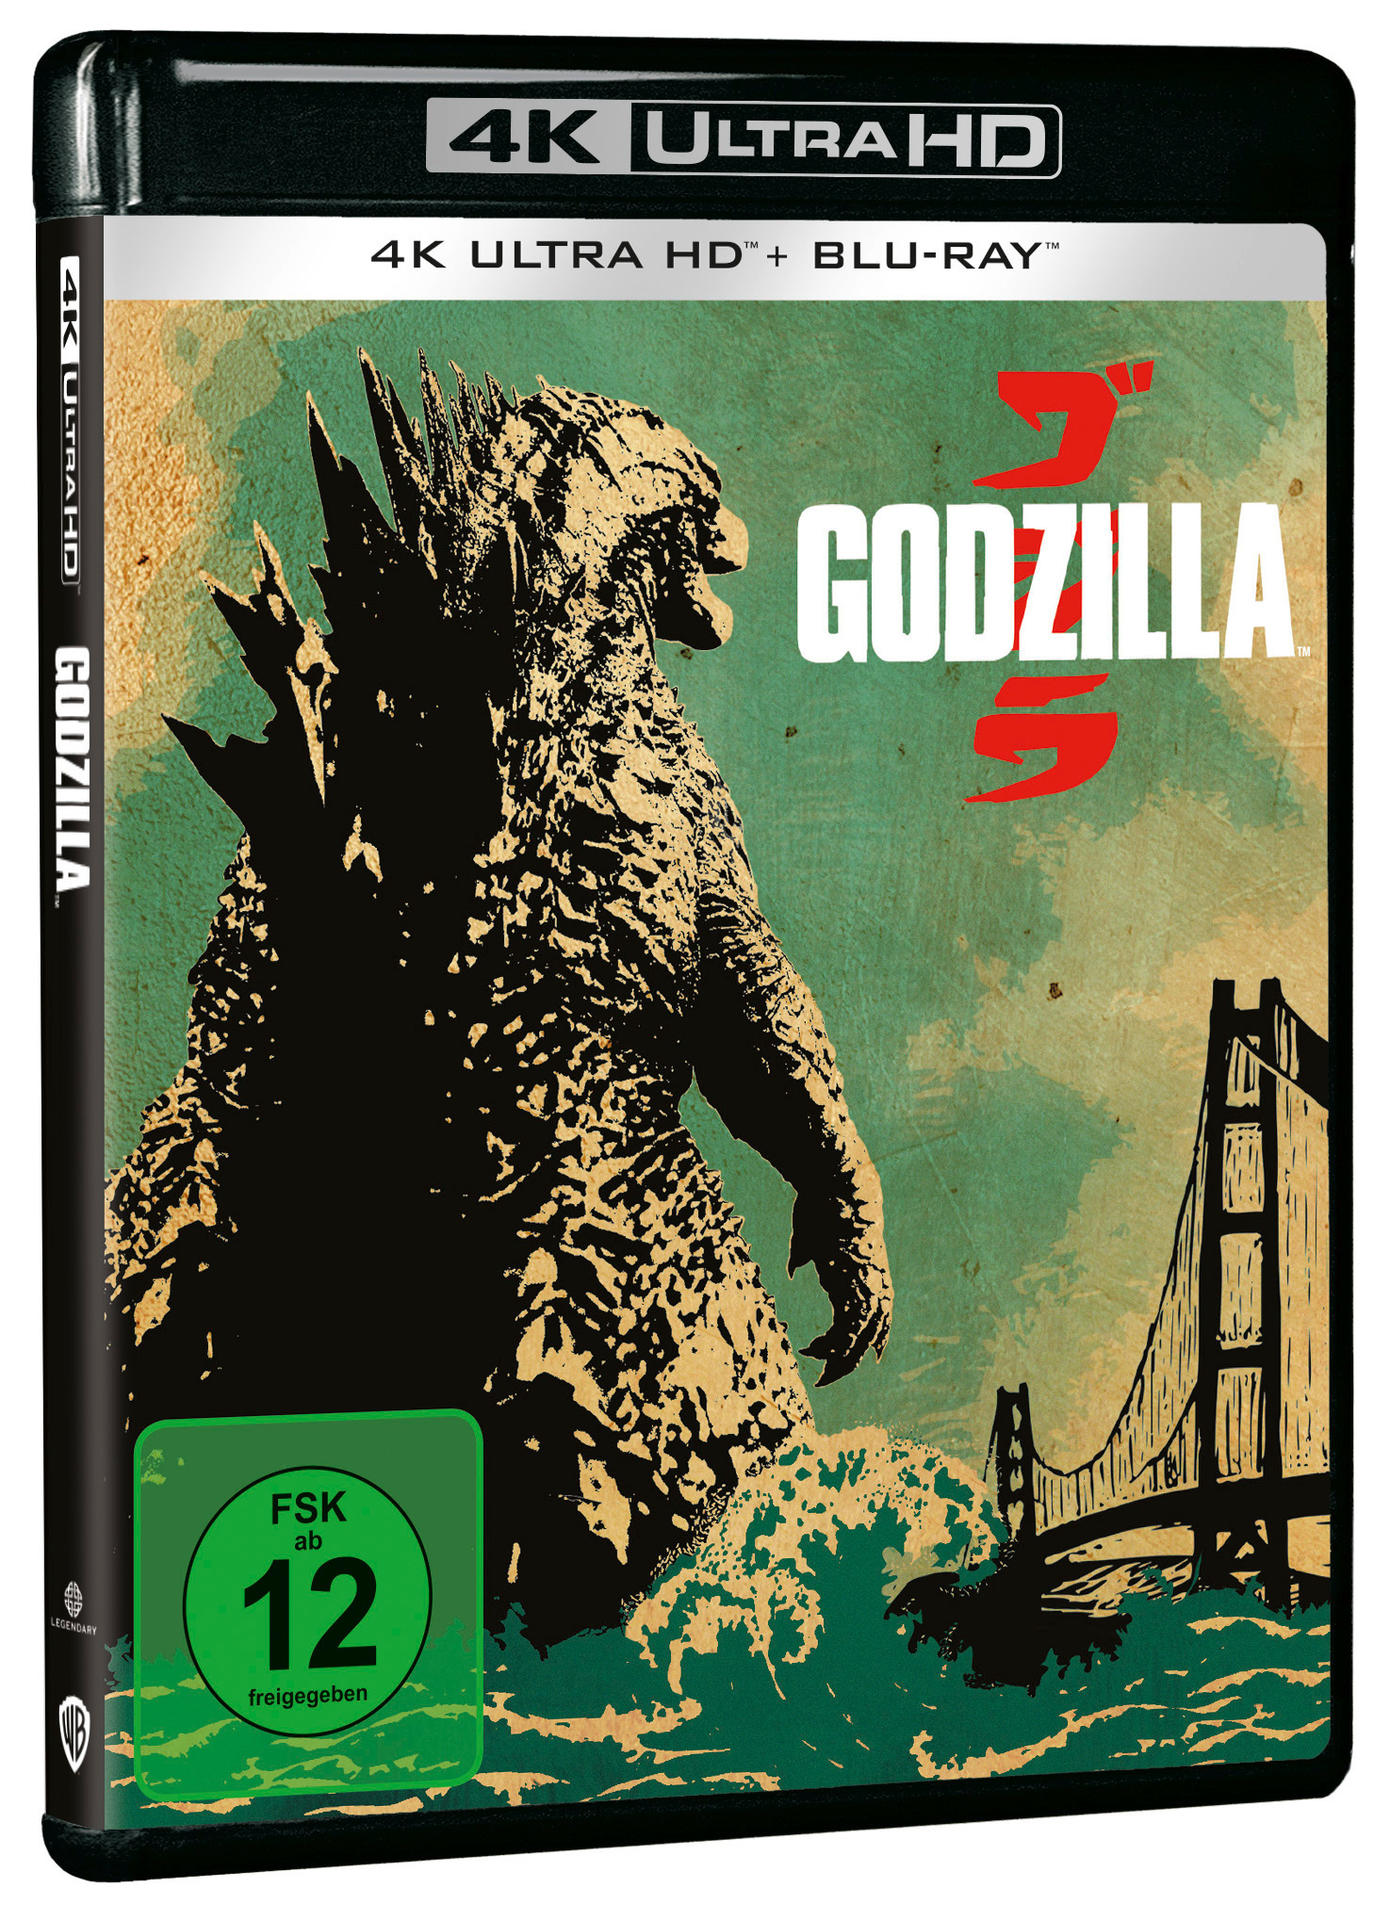 4K Ultra HD + Blu-ray Godzilla Blu-ray